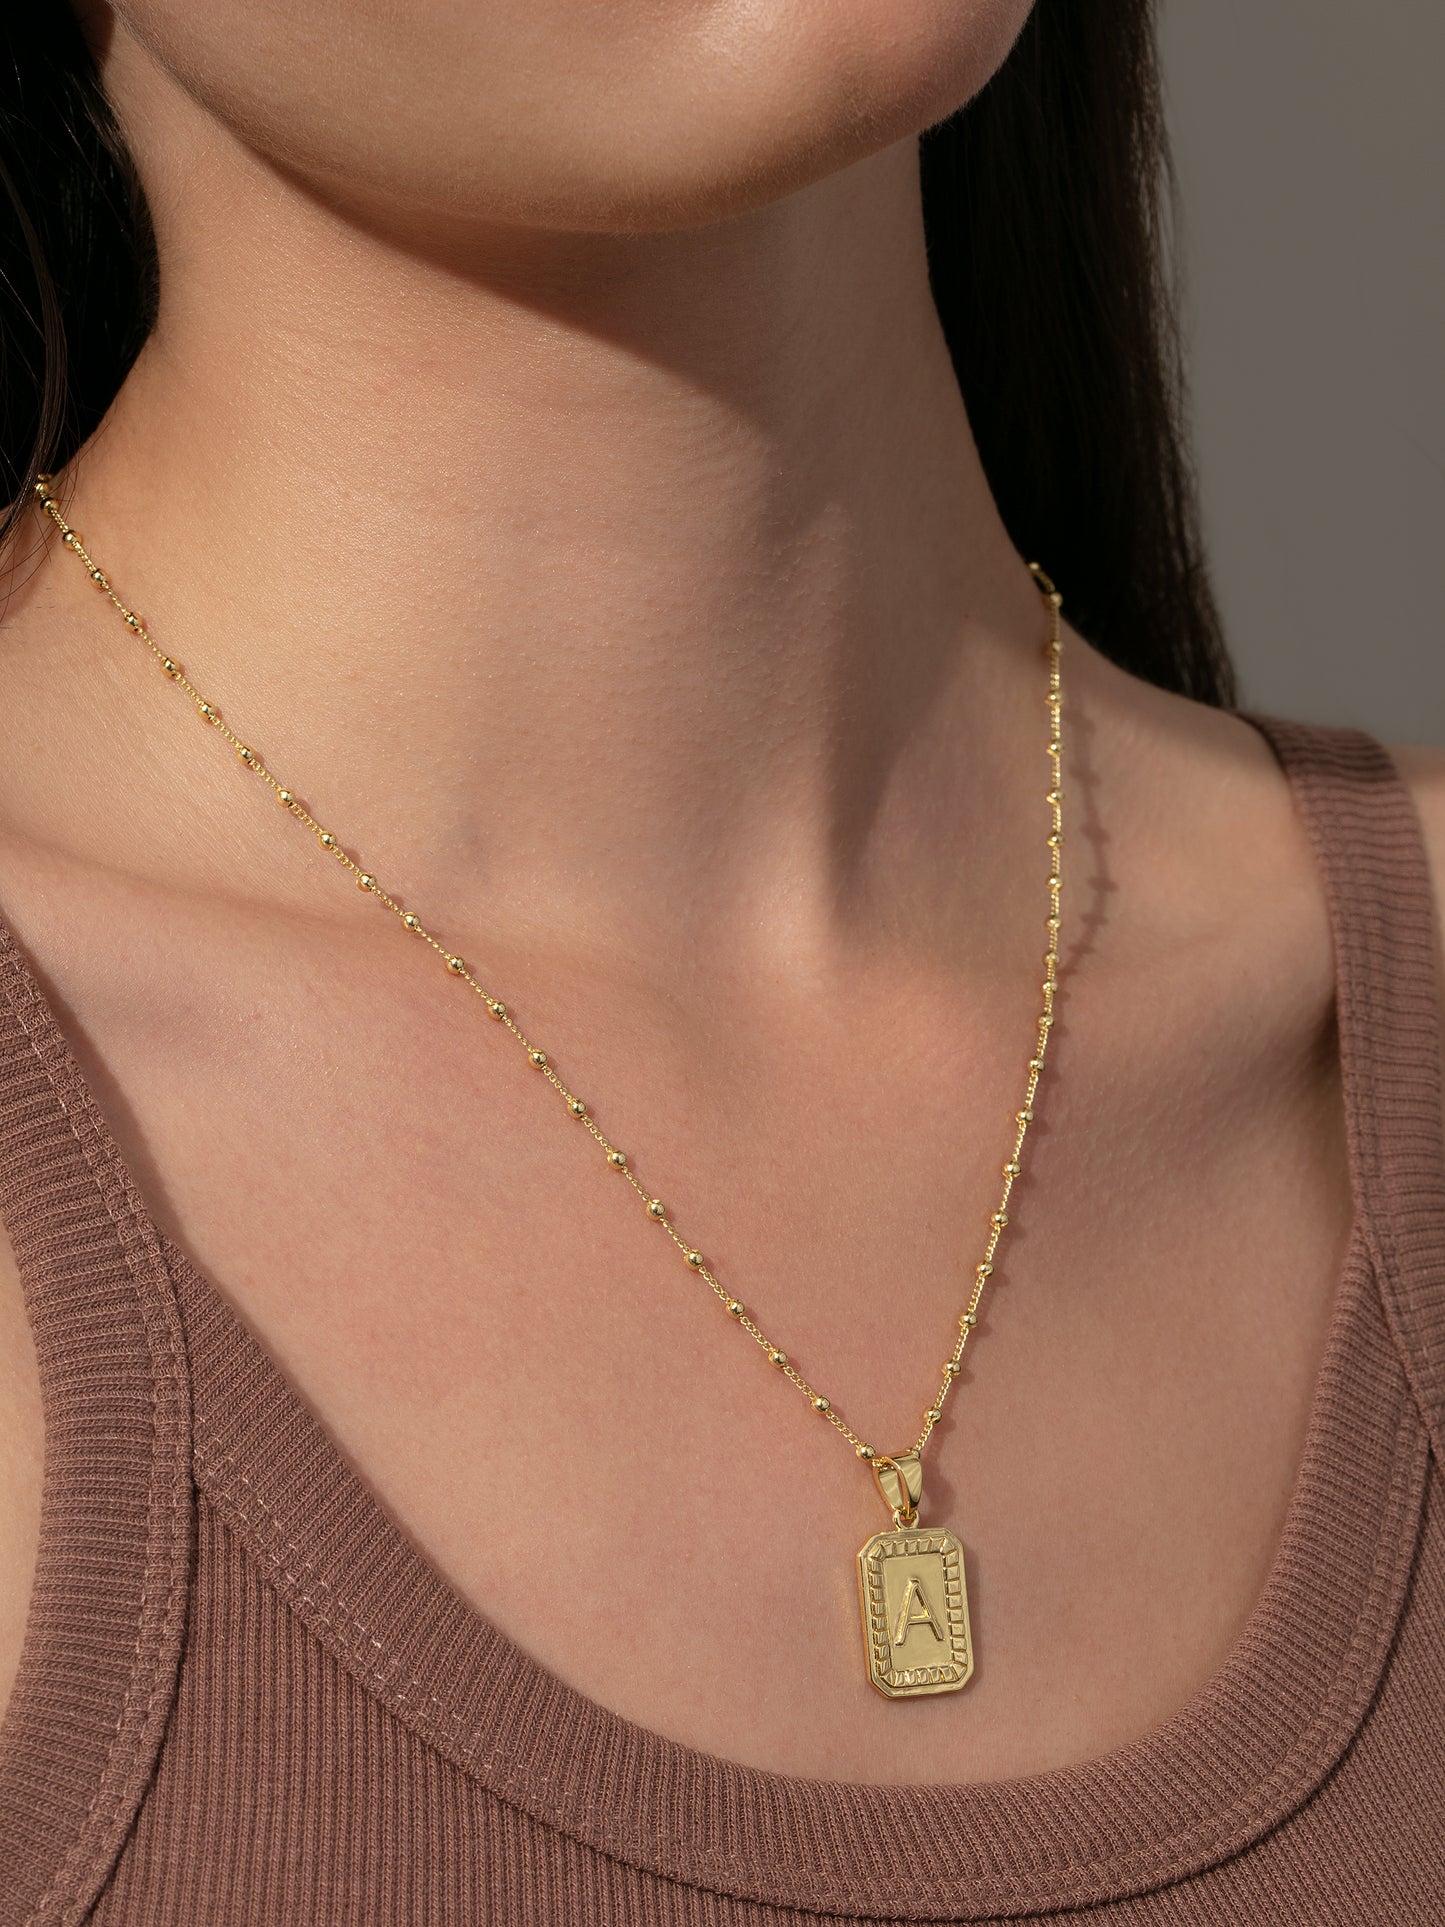 Sur Necklace | Gold | Product Image | Uncommon James